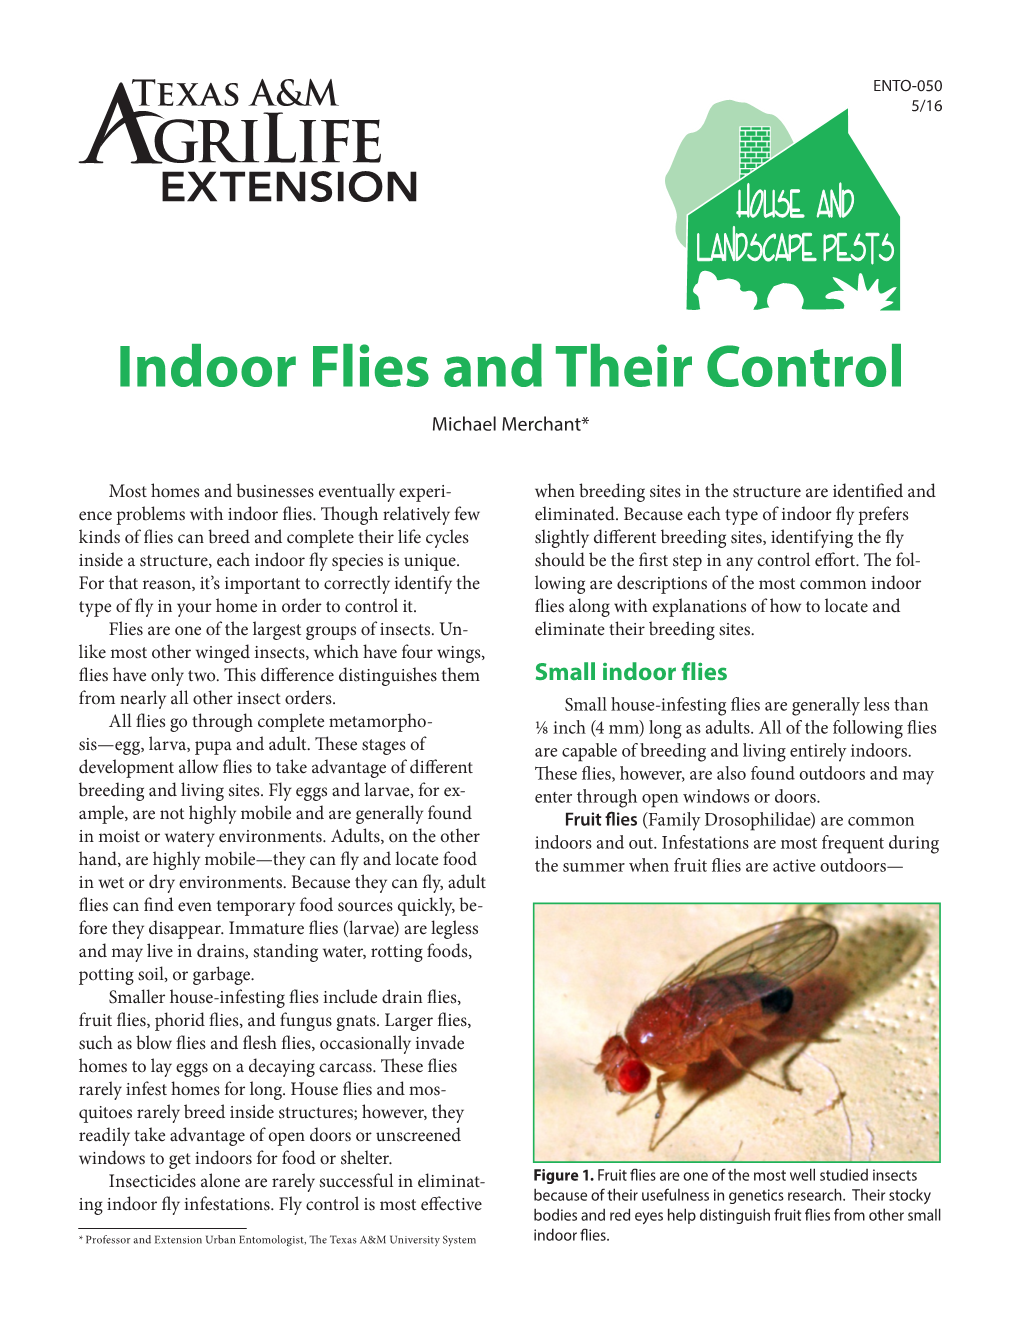 Indoor Flies and Their Control Michael Merchant*